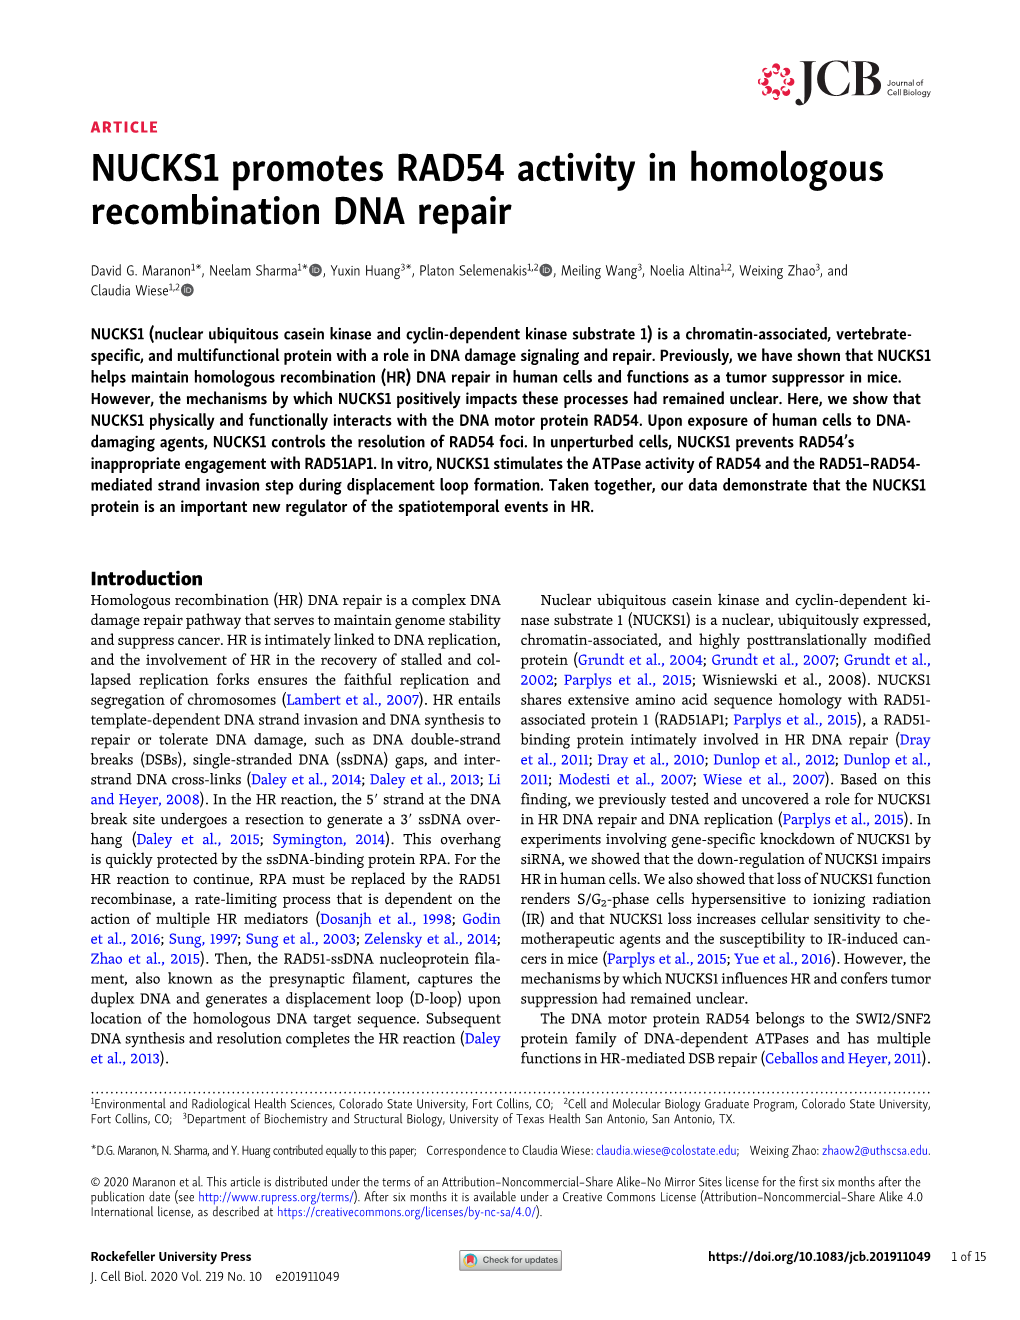 NUCKS1 Promotes RAD54 Activity in Homologous Recombination DNA Repair